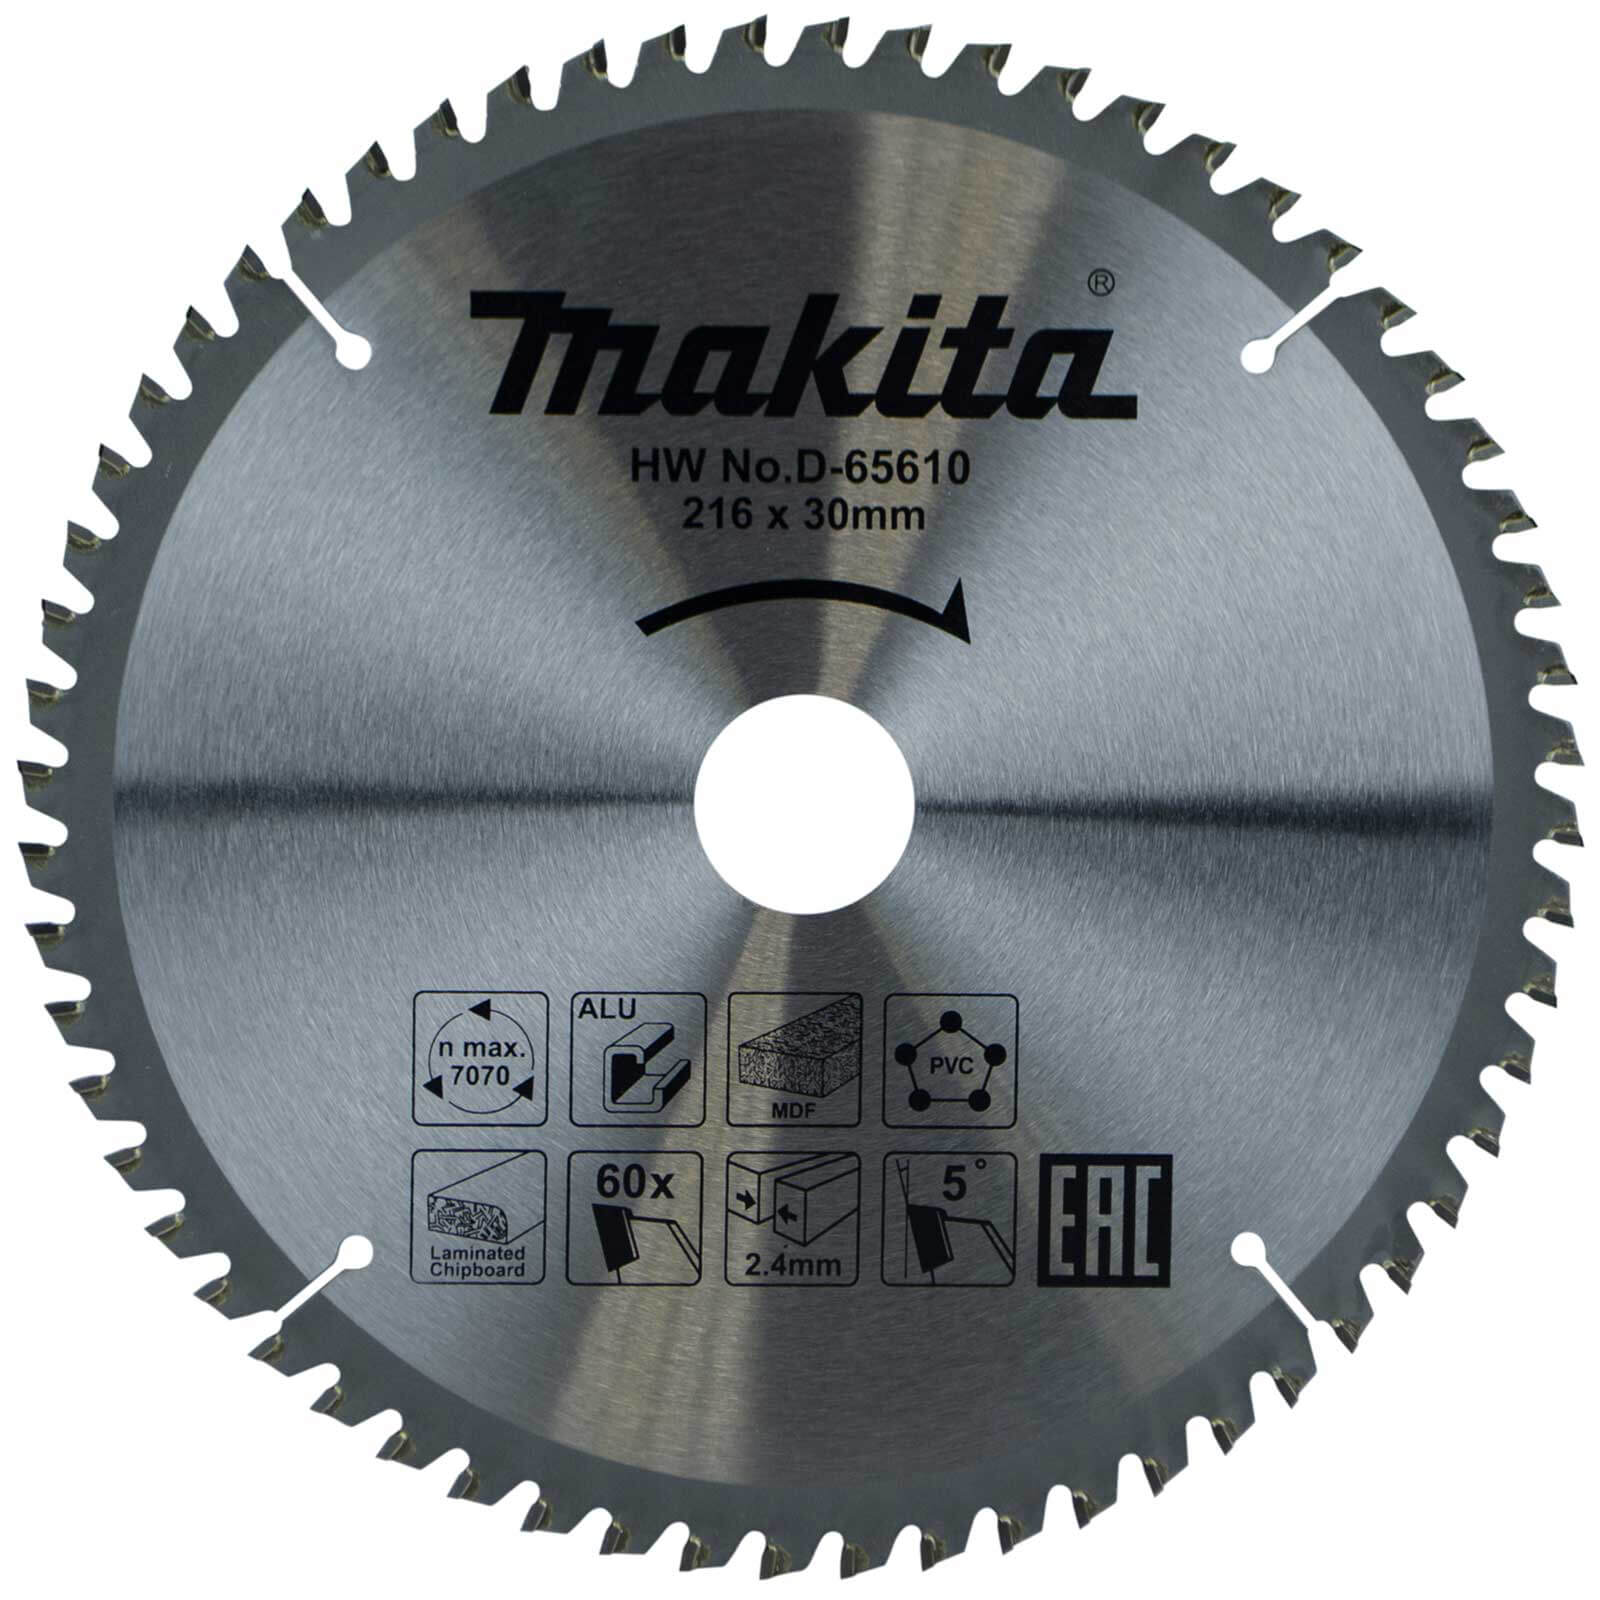 Photo of Makita Multi Purpose Circular Saw Blade 216mm 60t 30mm